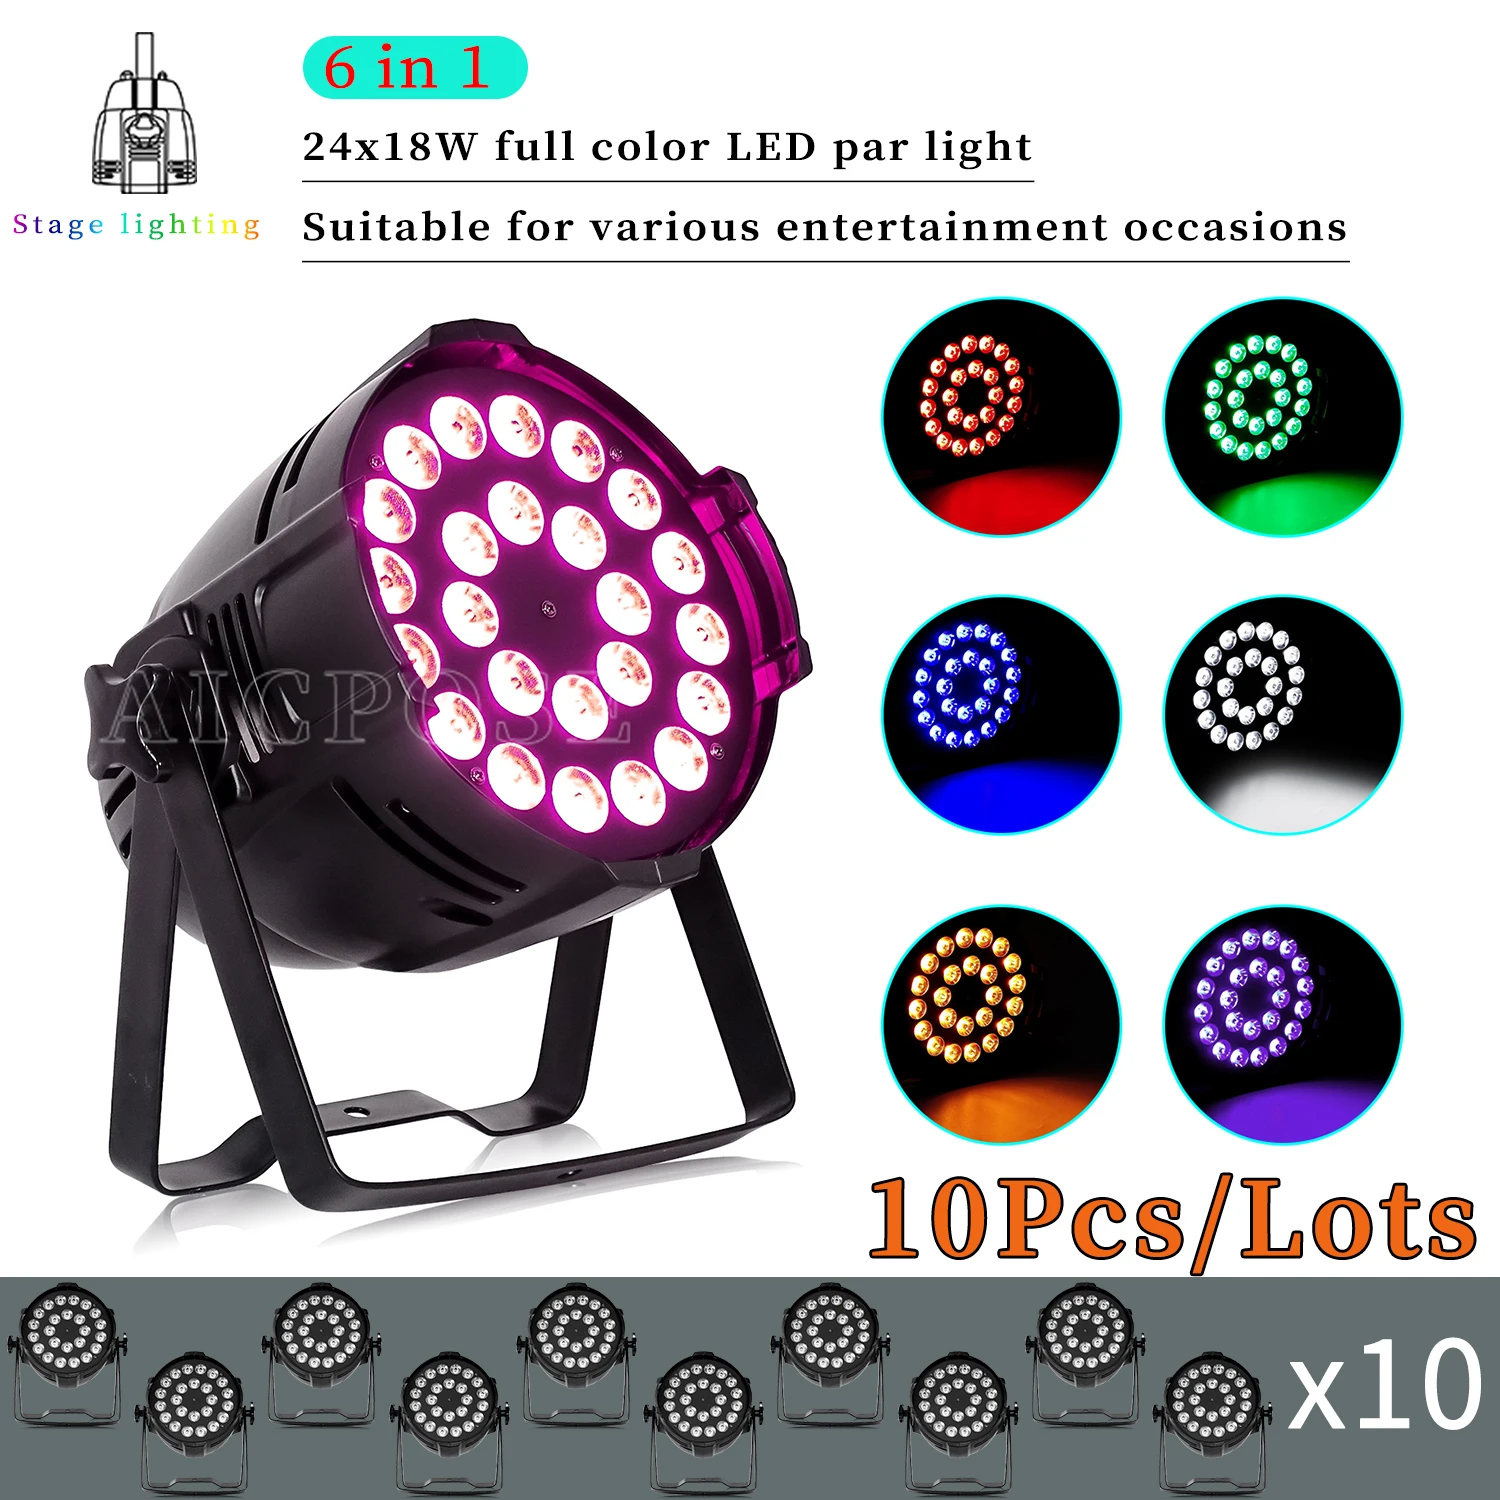 

10Pcs/Lots 24x12W/24x18W RGBWA UV 6 in 1 LED Par Lights Aluminum Stage Spotlight DMX Control DJ Disco Equipment Lighting